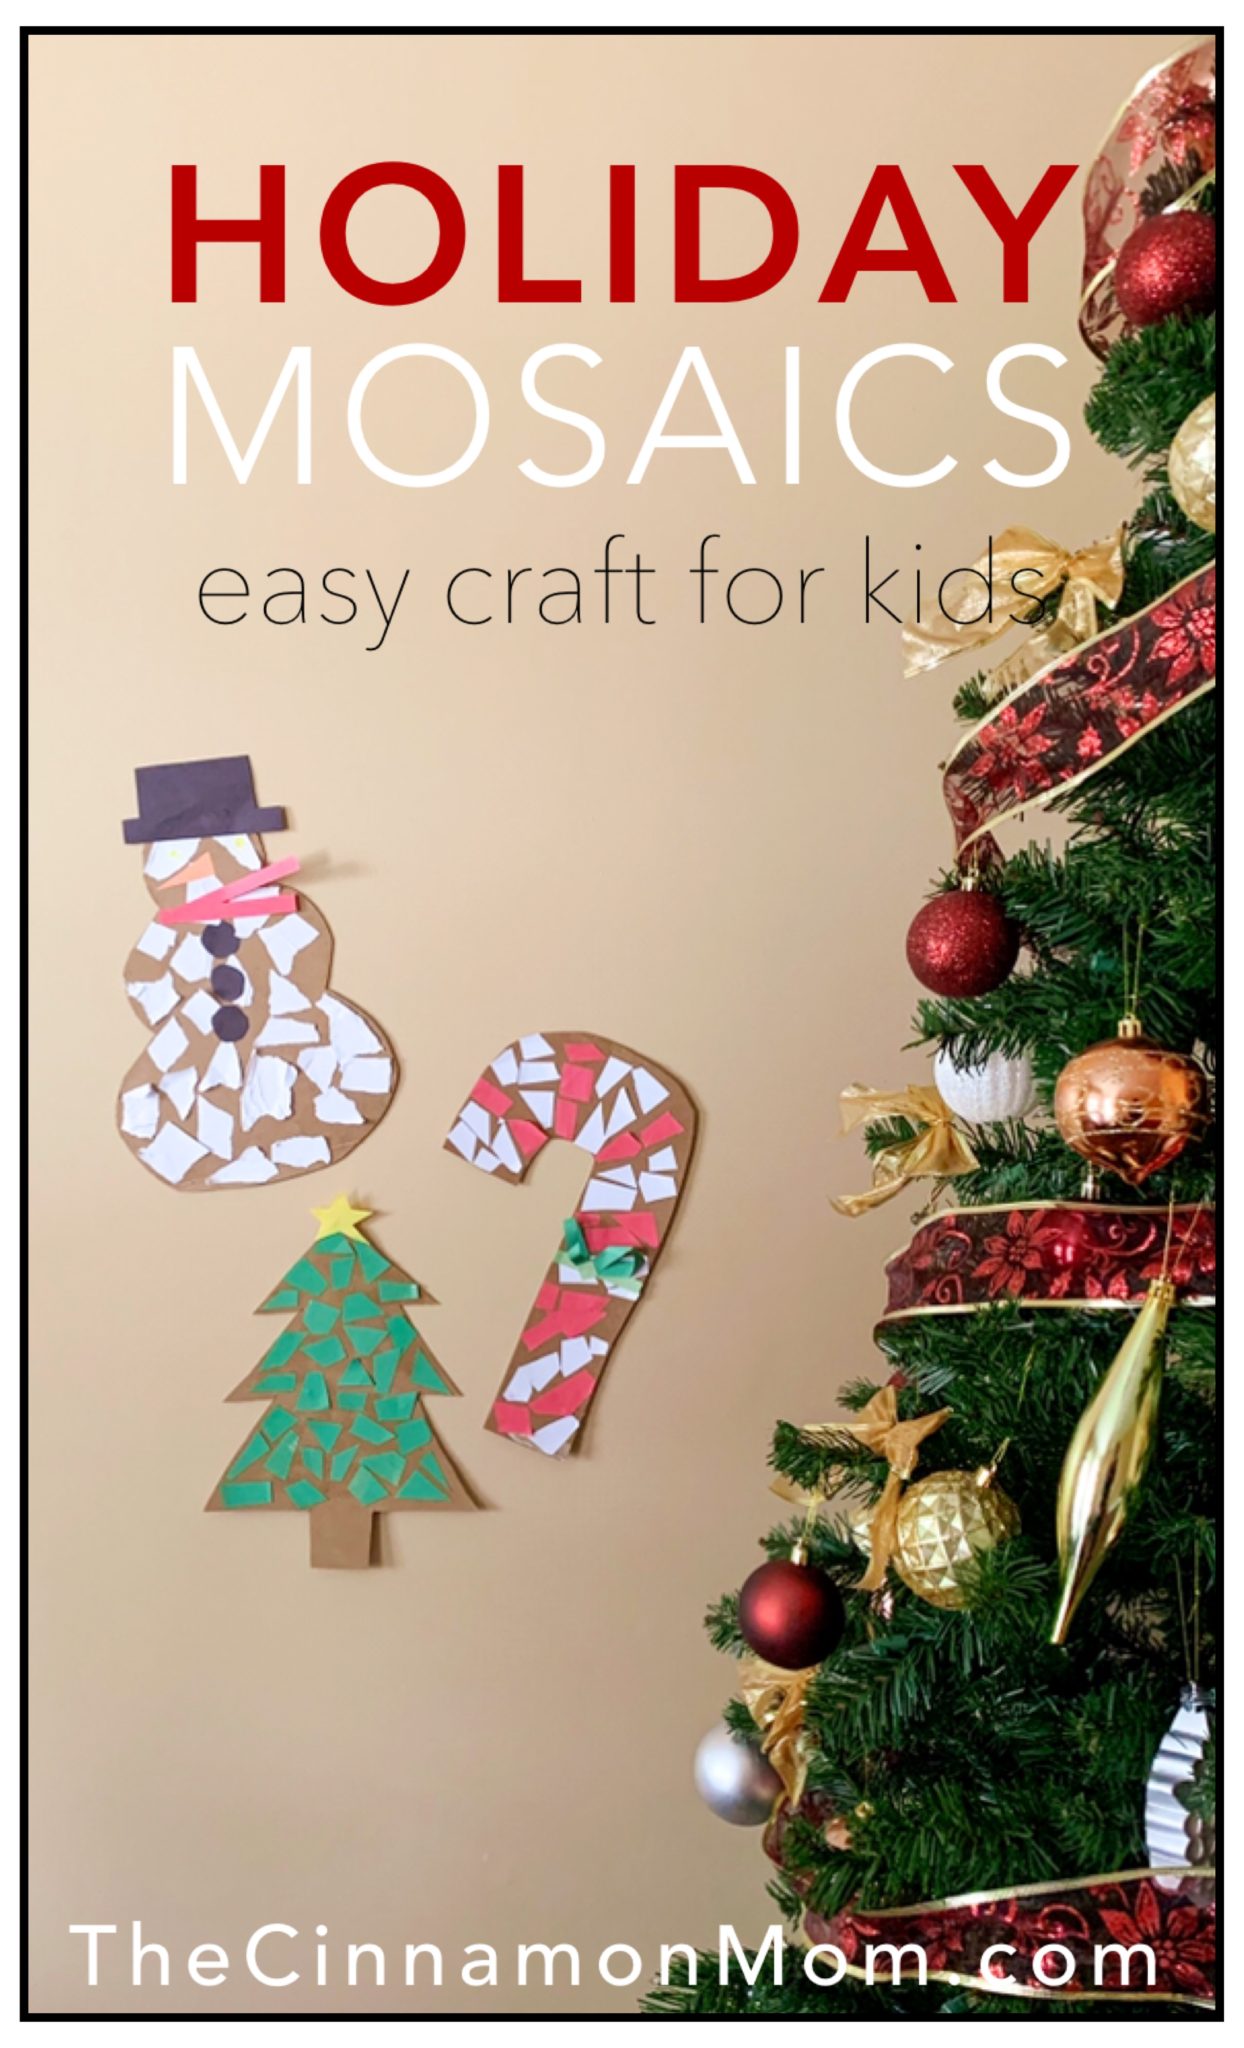 Holiday Mosaic Crafts